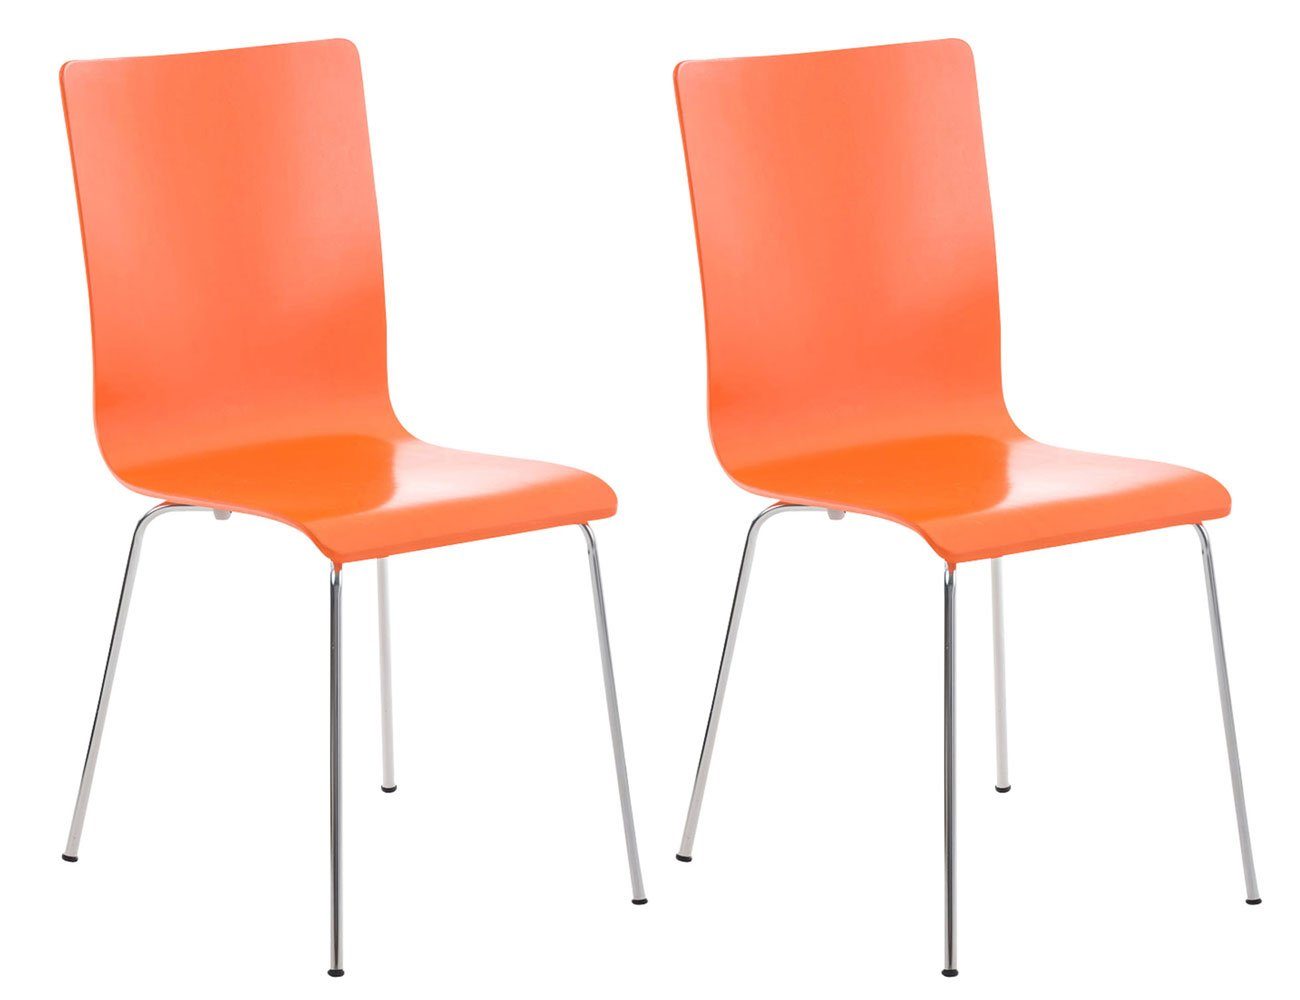 2 Sitzfläche (Besprechungsstuhl Besucherstuhl chrom Holz TPFLiving ergonomisch - Konferenzstuhl mit Messestuhl, - orange Peppo Warteraumstuhl Metall - - Gestell: geformter St), Sitzfläche: